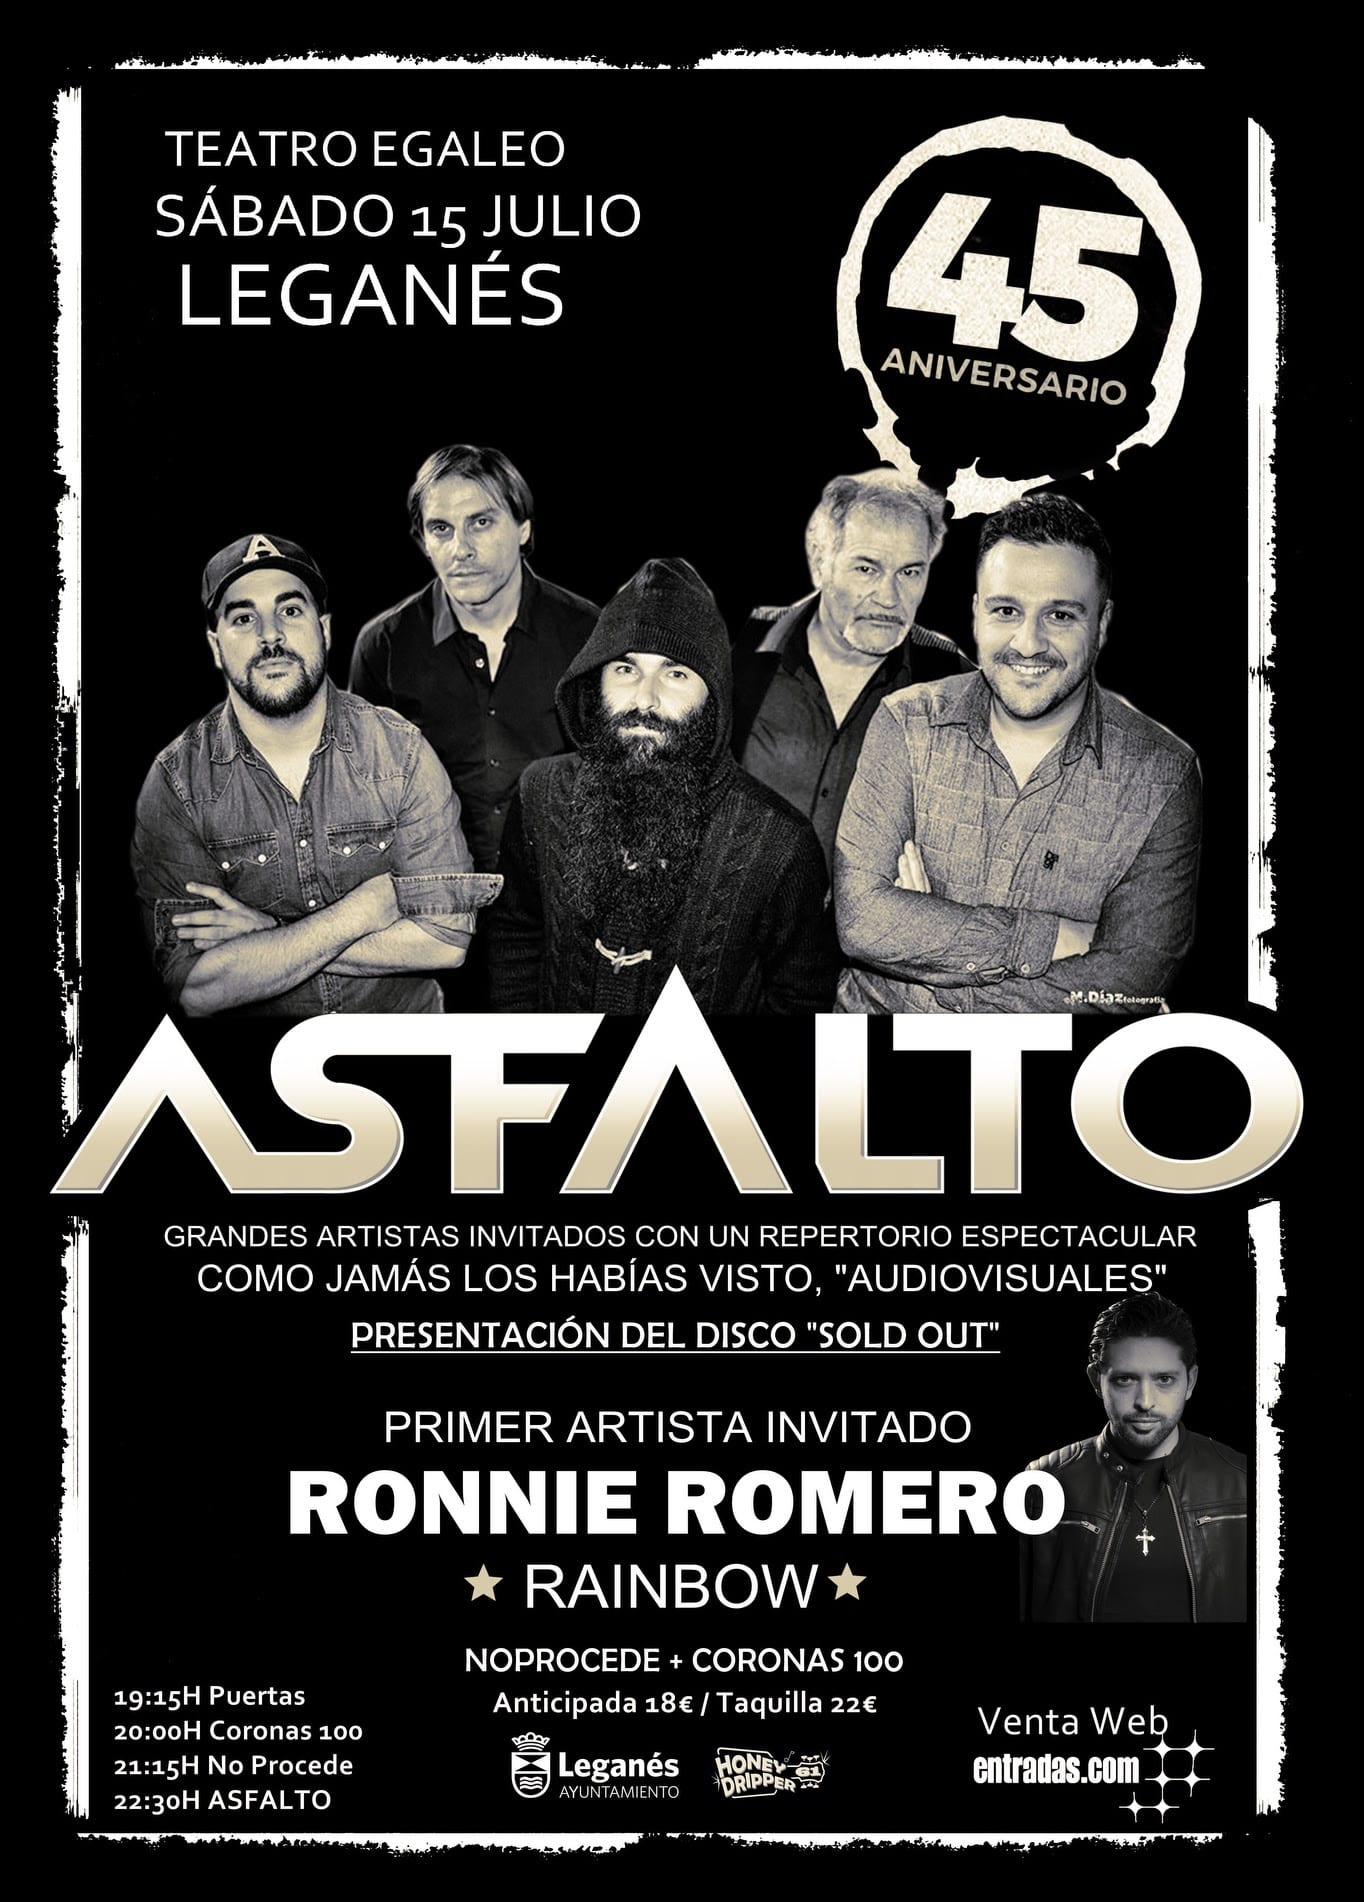 Asfalto presentan su disco “Sold Out” en el Teatro Egaleo de Leganés el próximo 15 de Julio!